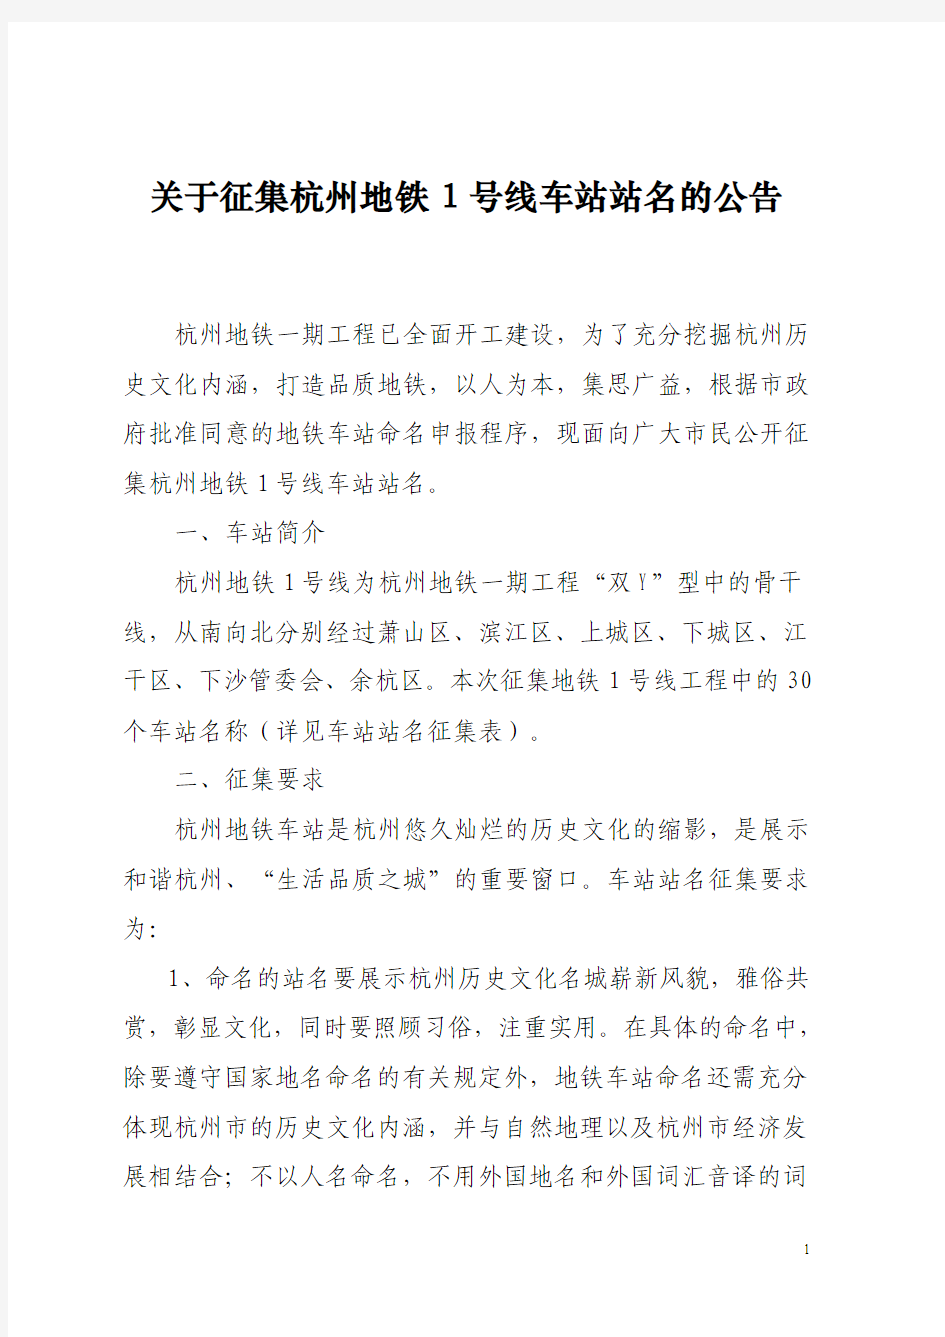 关于征集杭州地铁1号线车站站名的公告